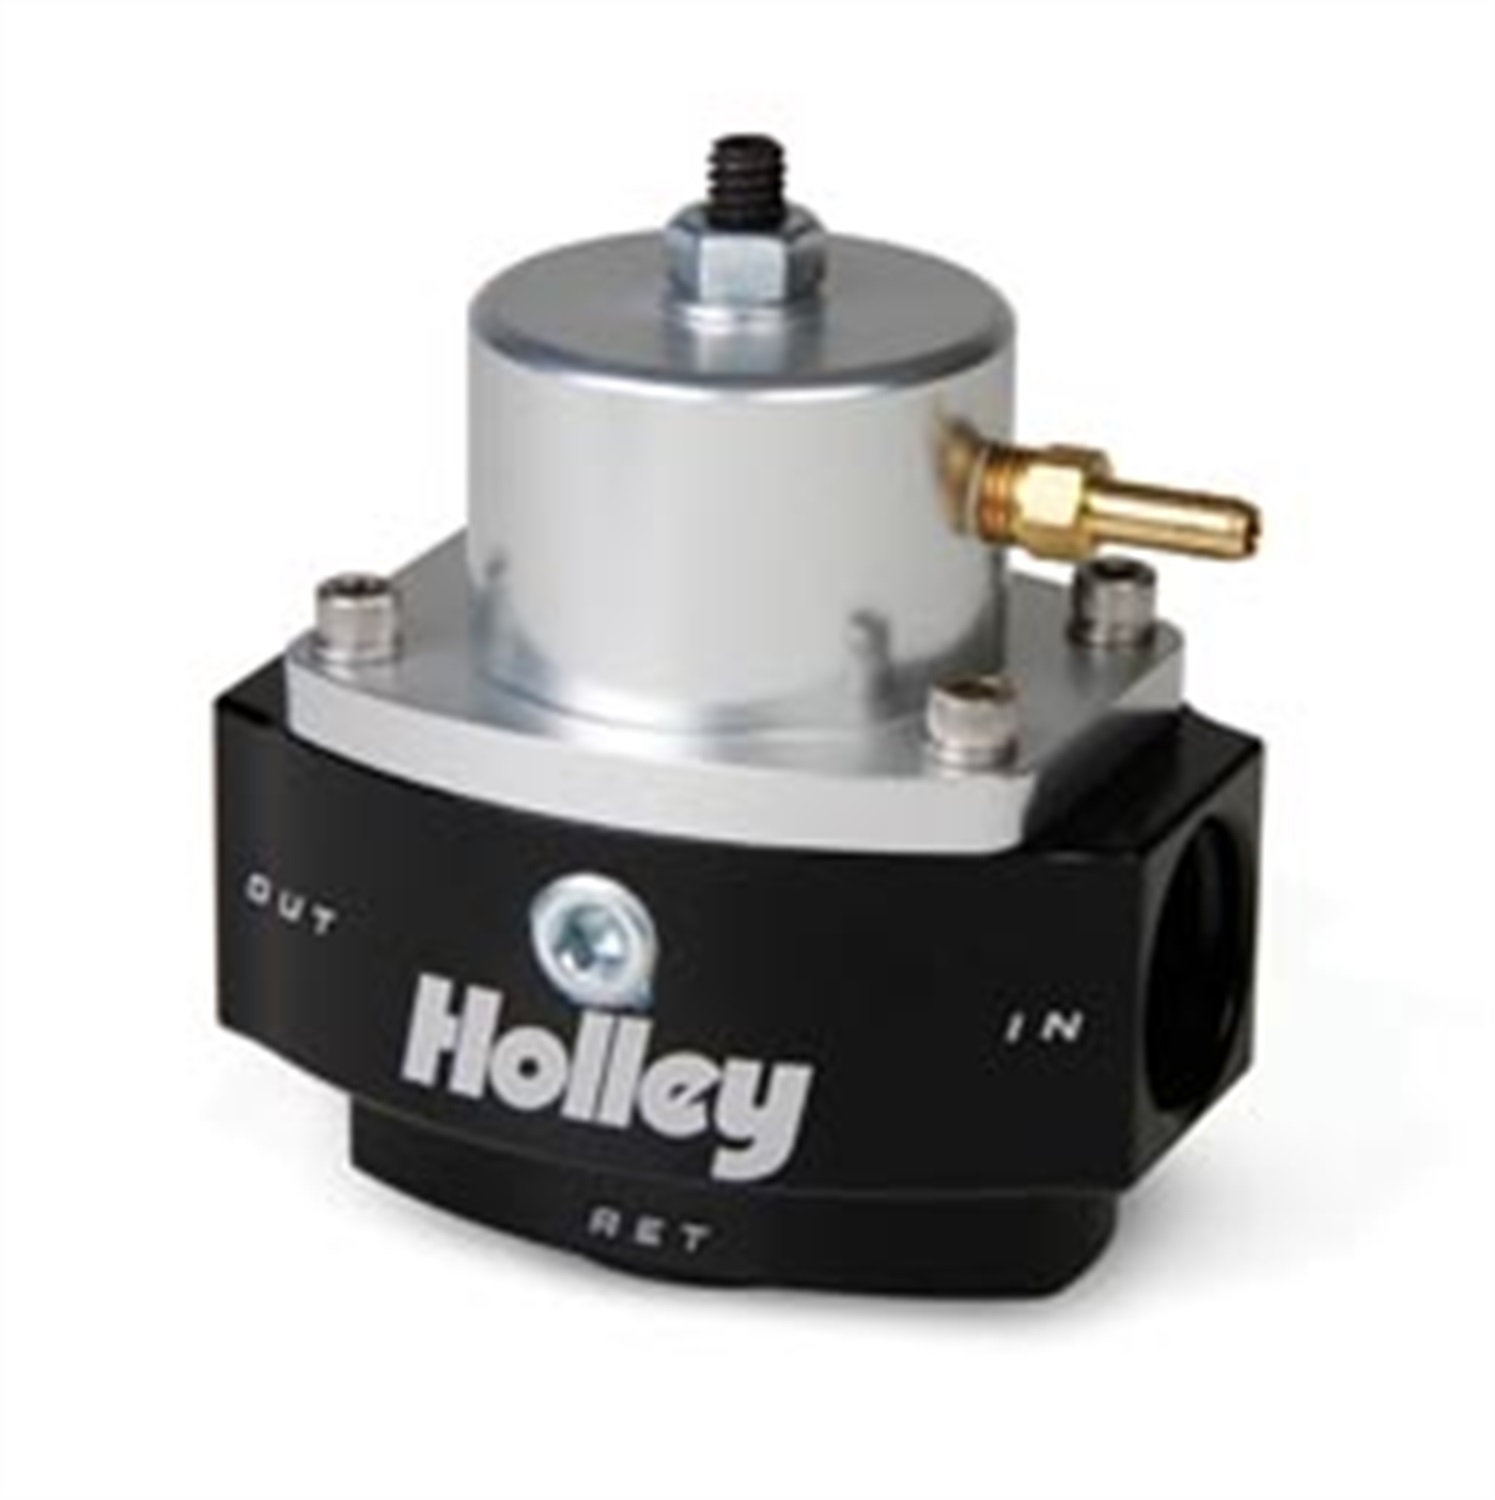 Holley Performance Holley Performance 12-848 Dominator; EFI Billet Fuel Pressure Regulator